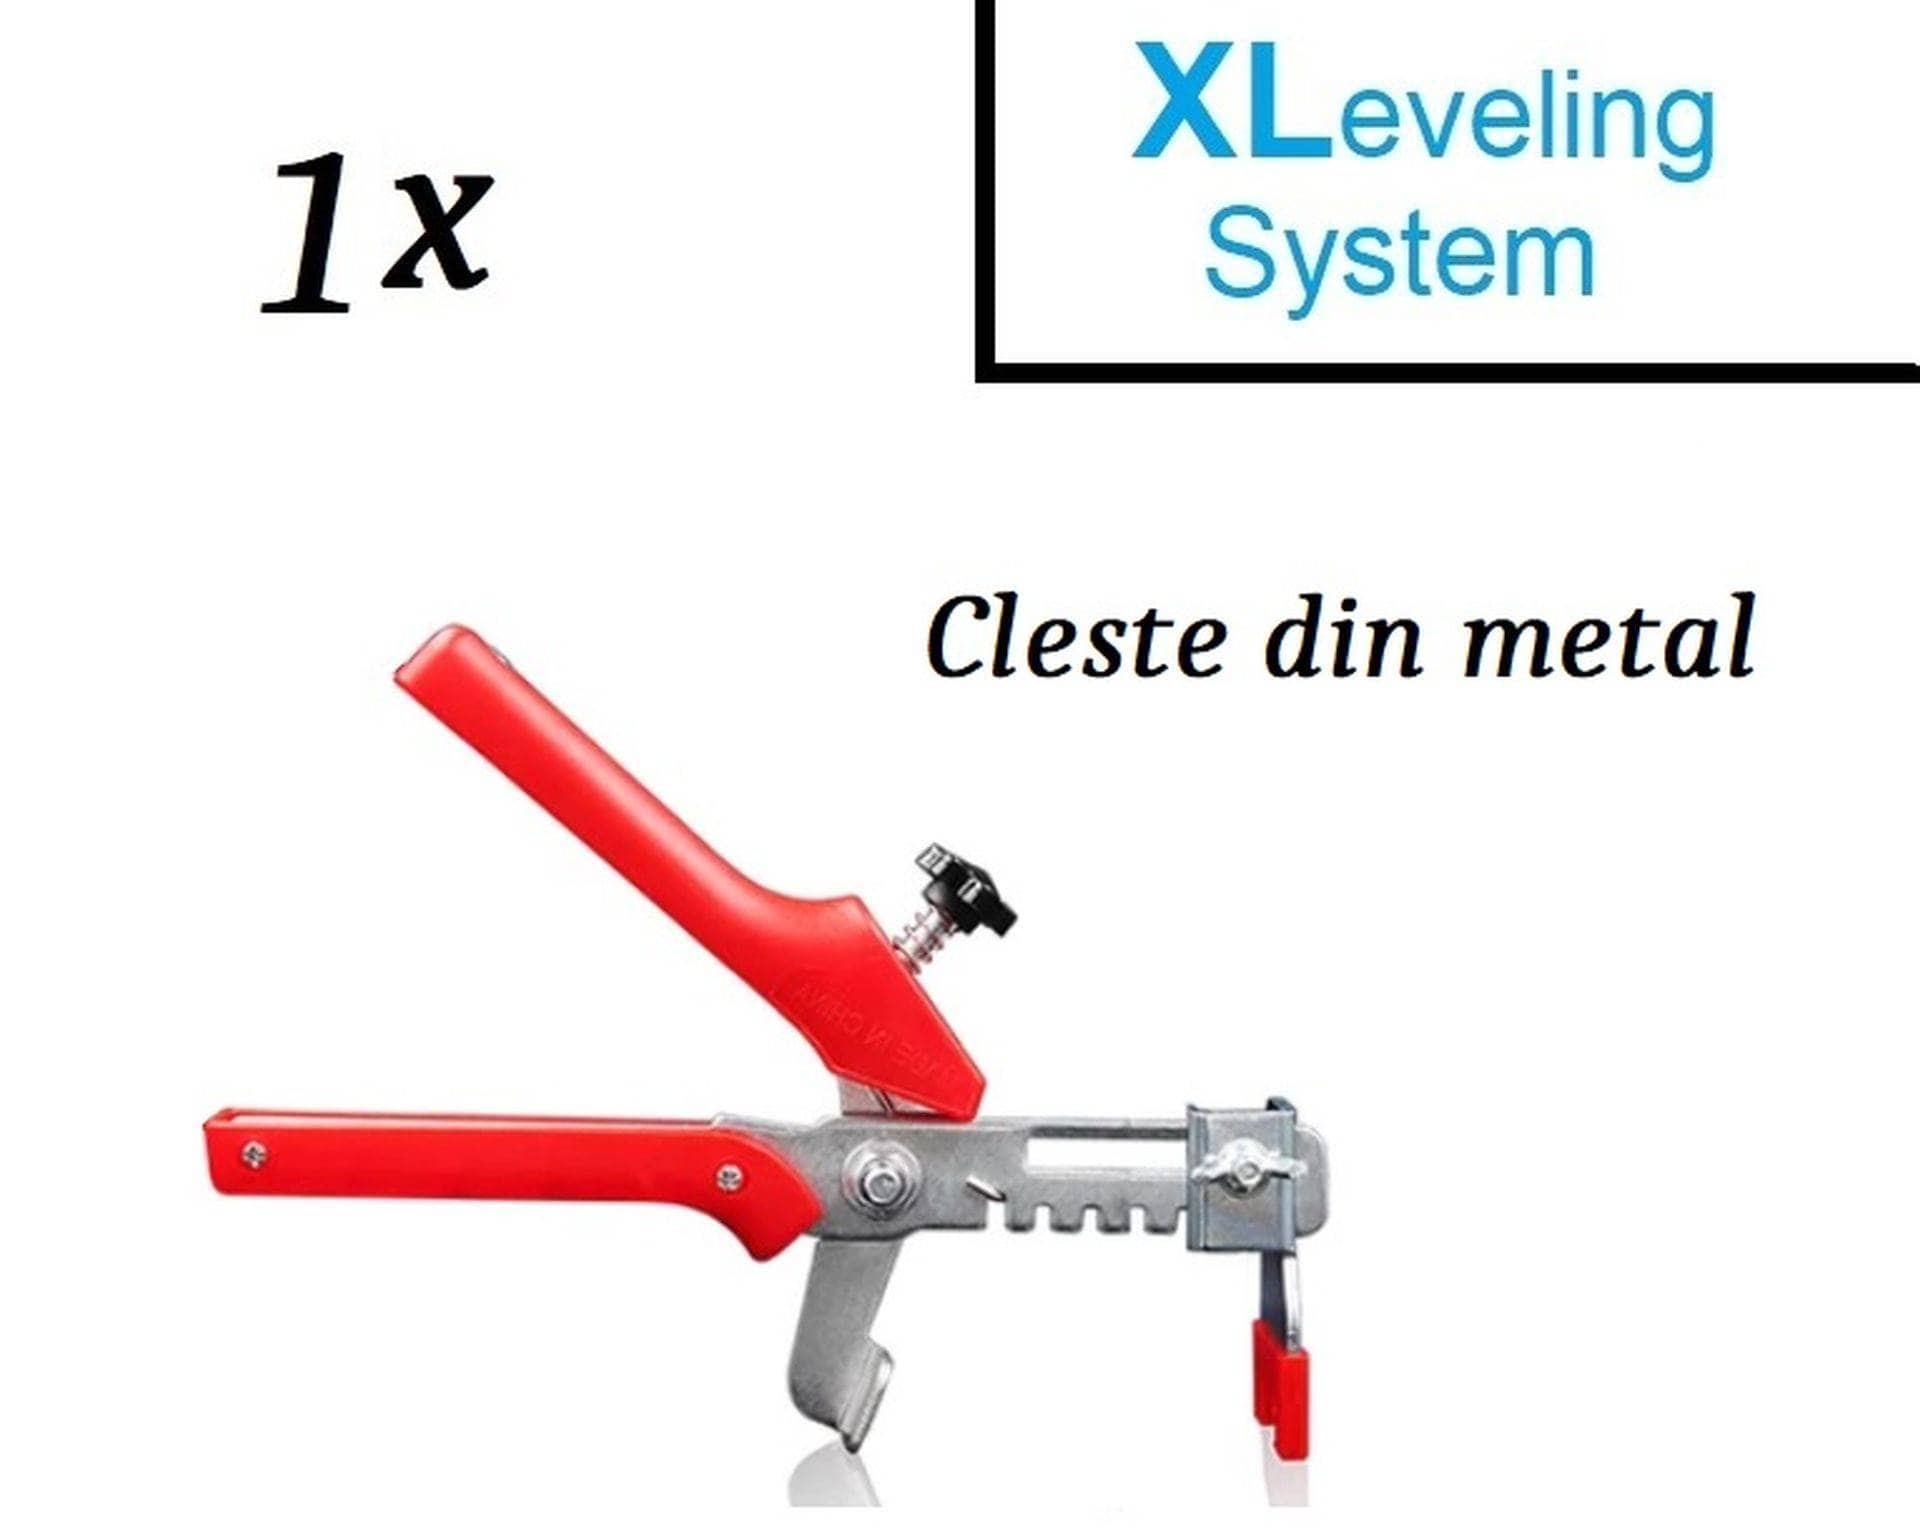 Cleste nivelare placi XLeveling din metal